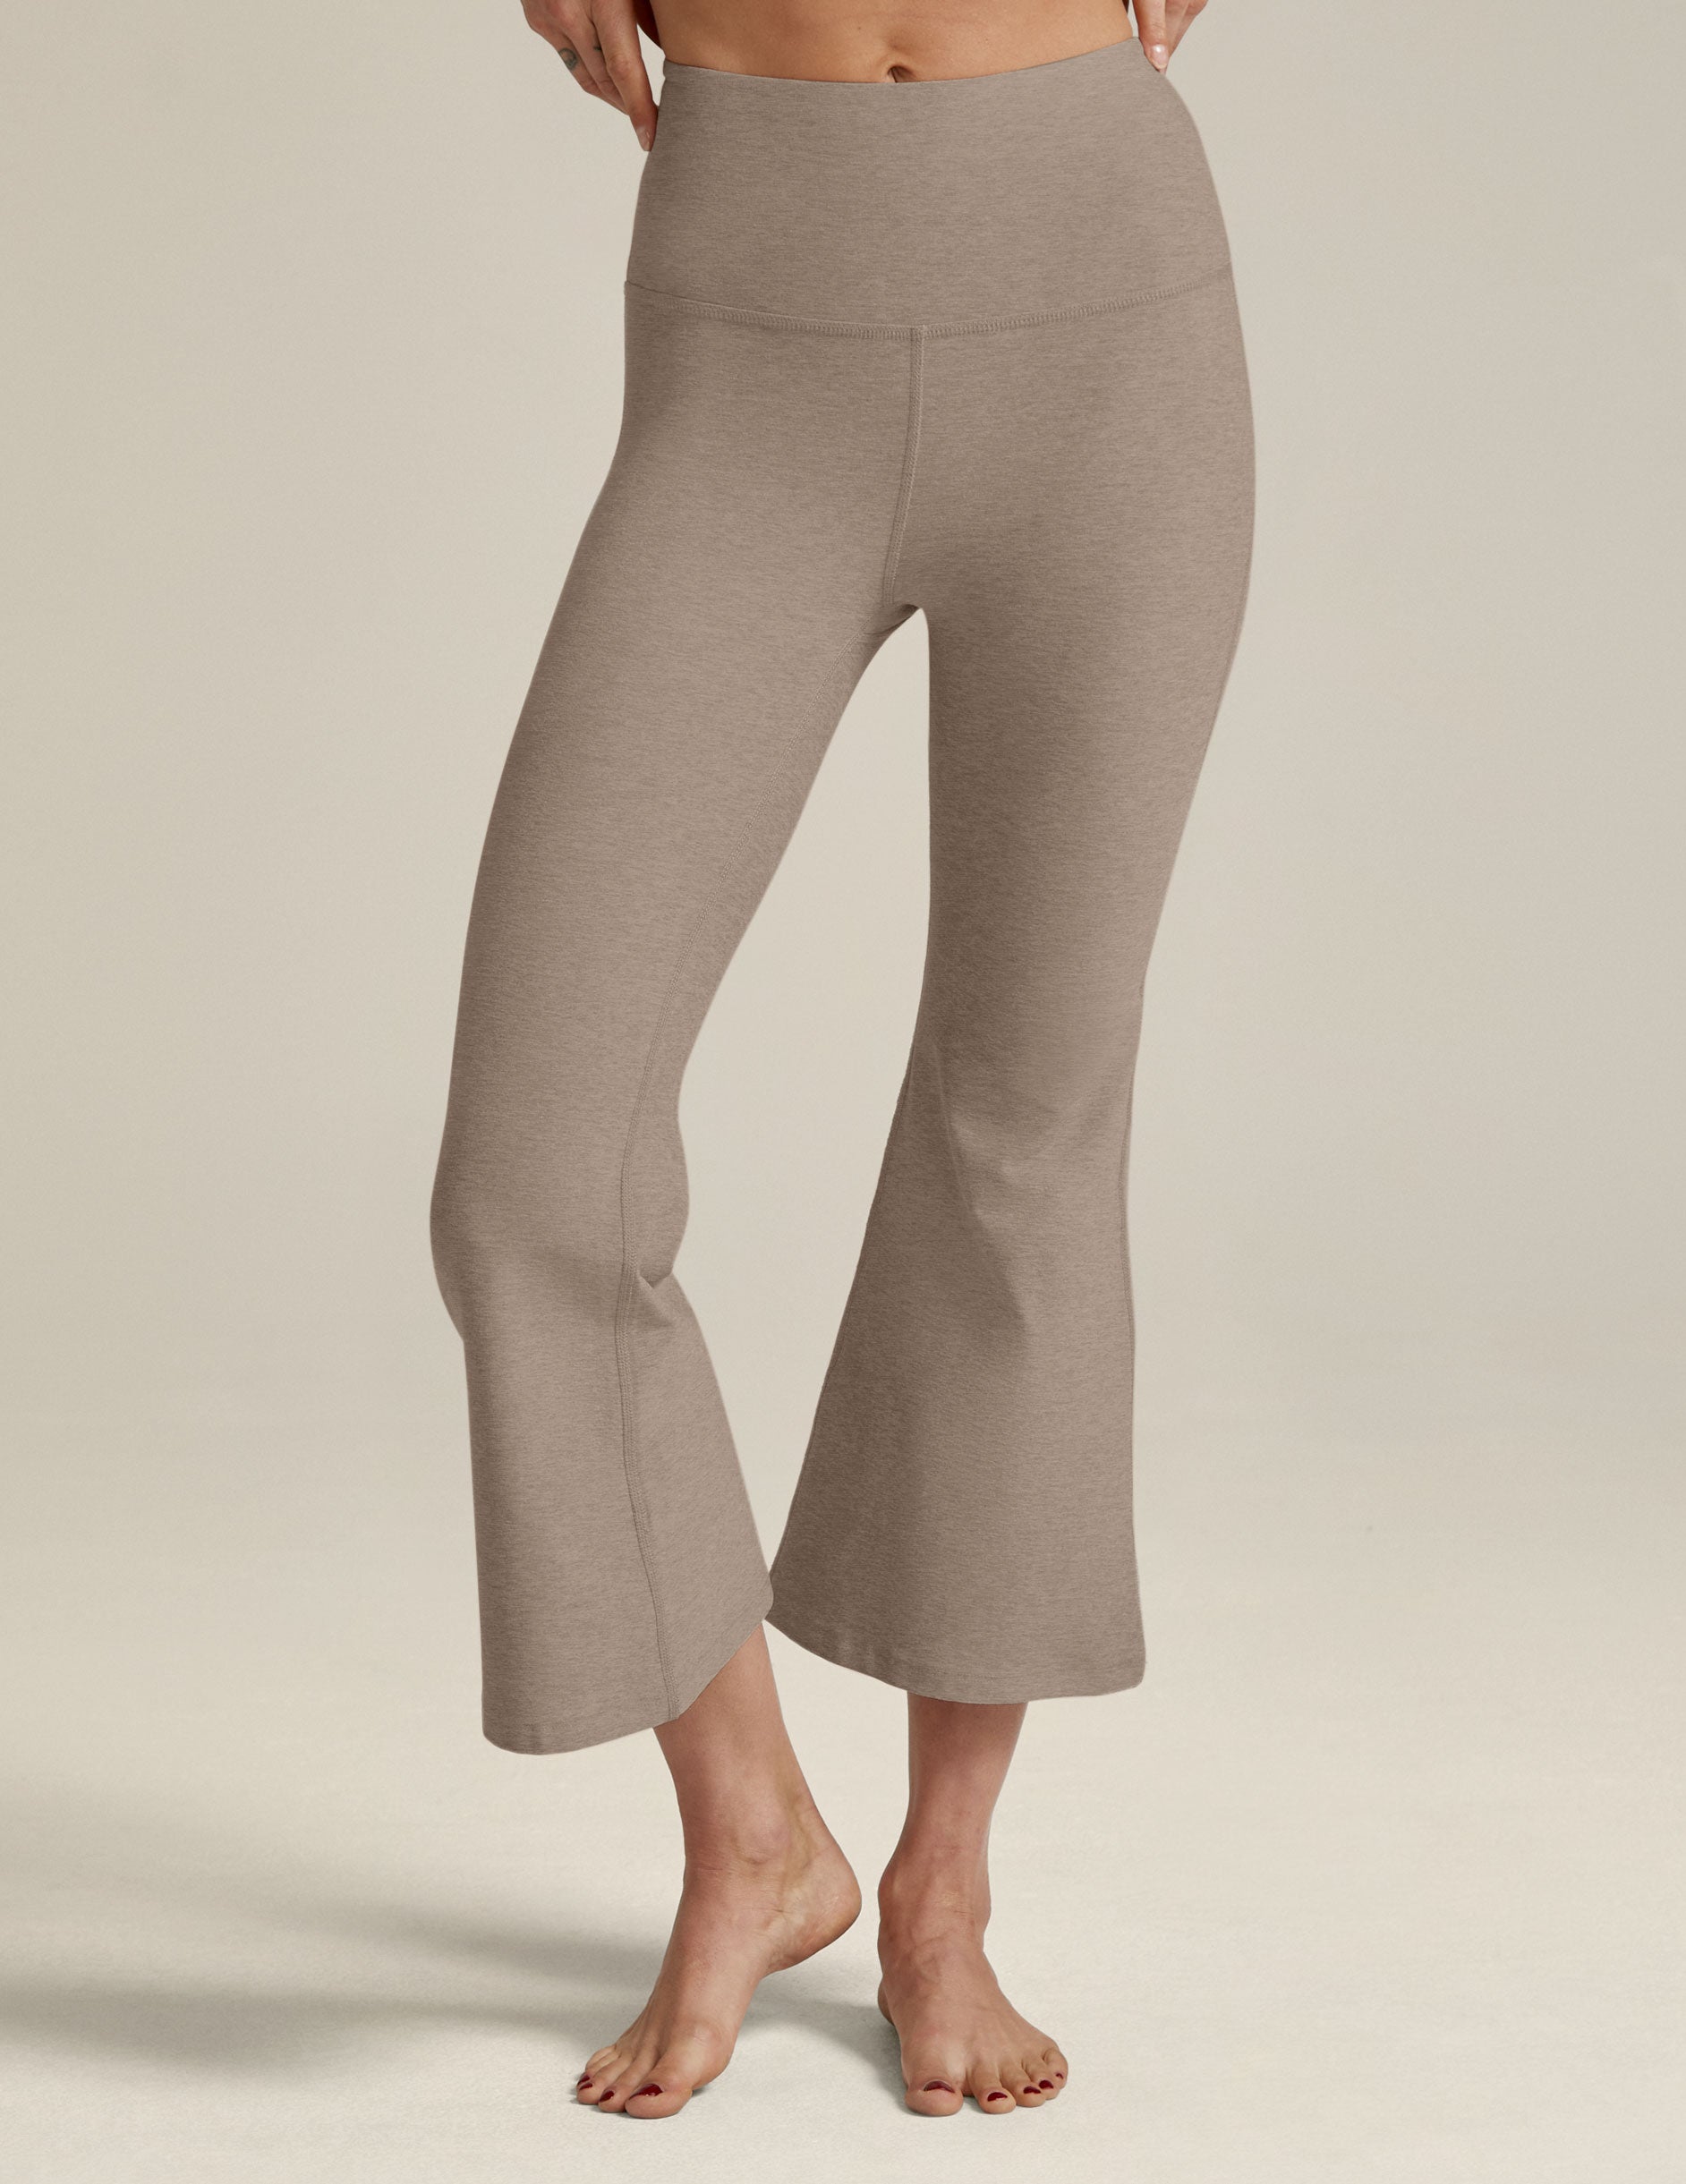 Women's Cropped Yoga Pants Ukulele